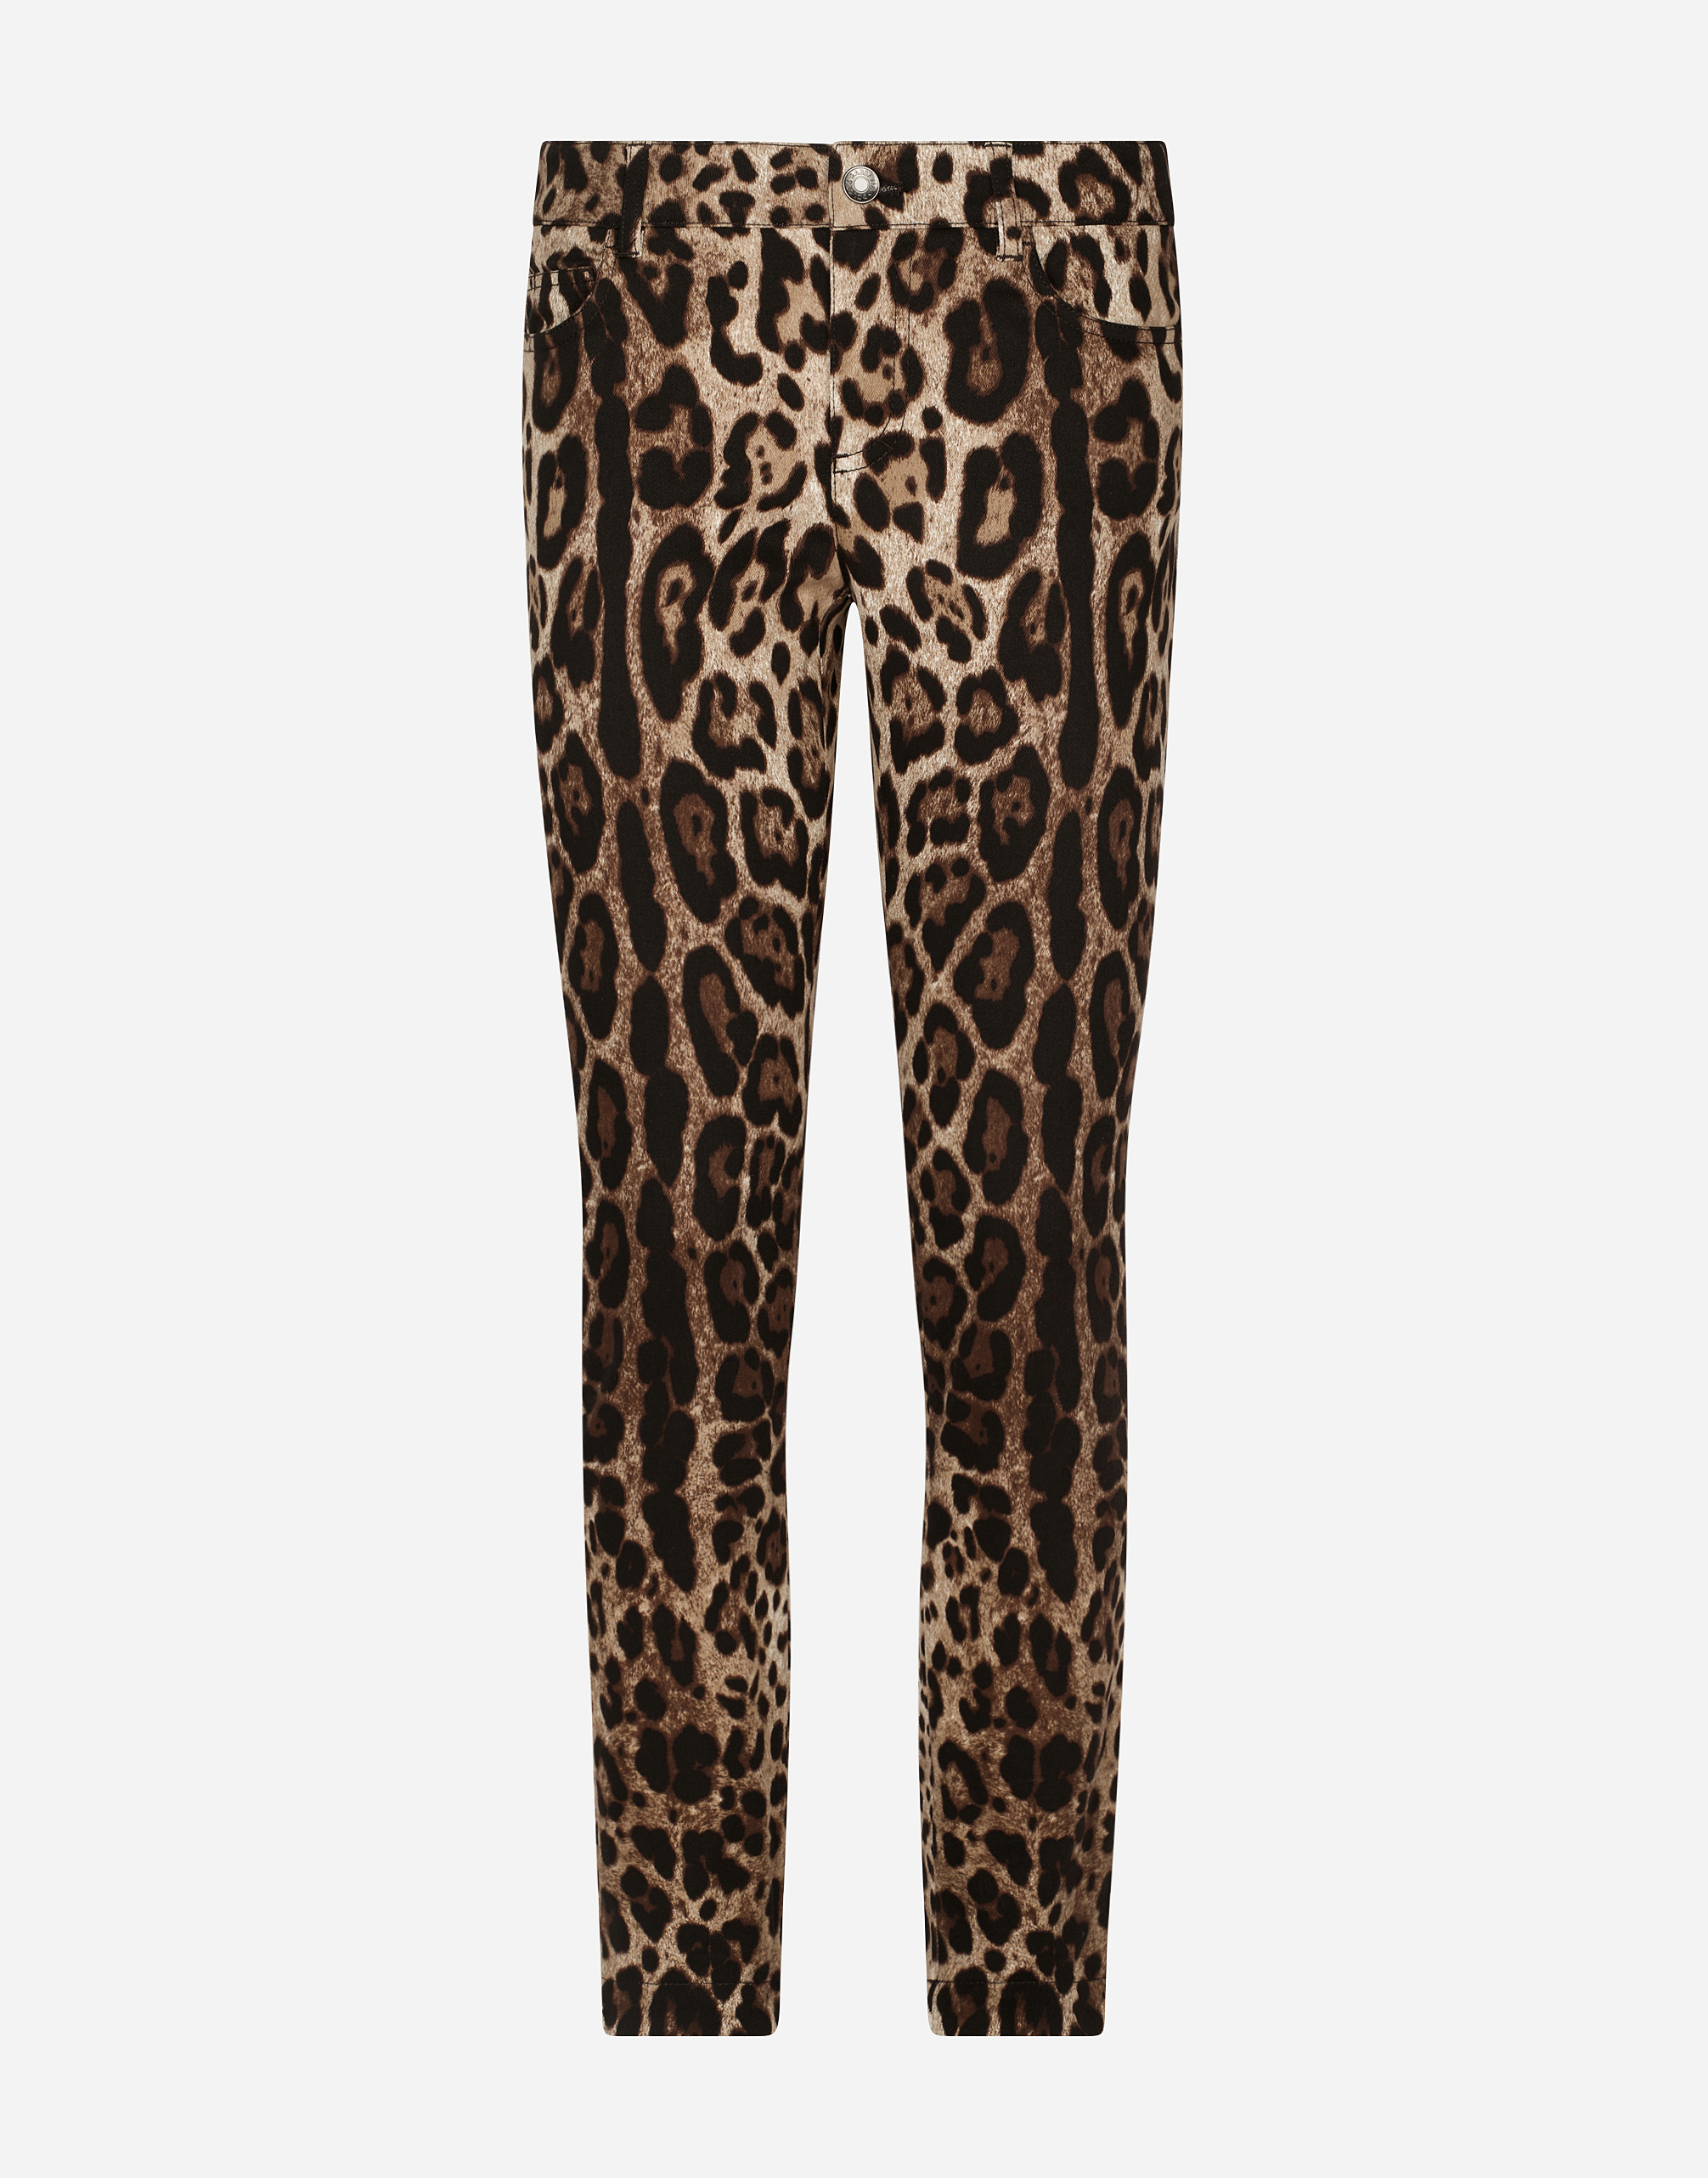 Pantalón cigarette estampado de leopardo multico mujer